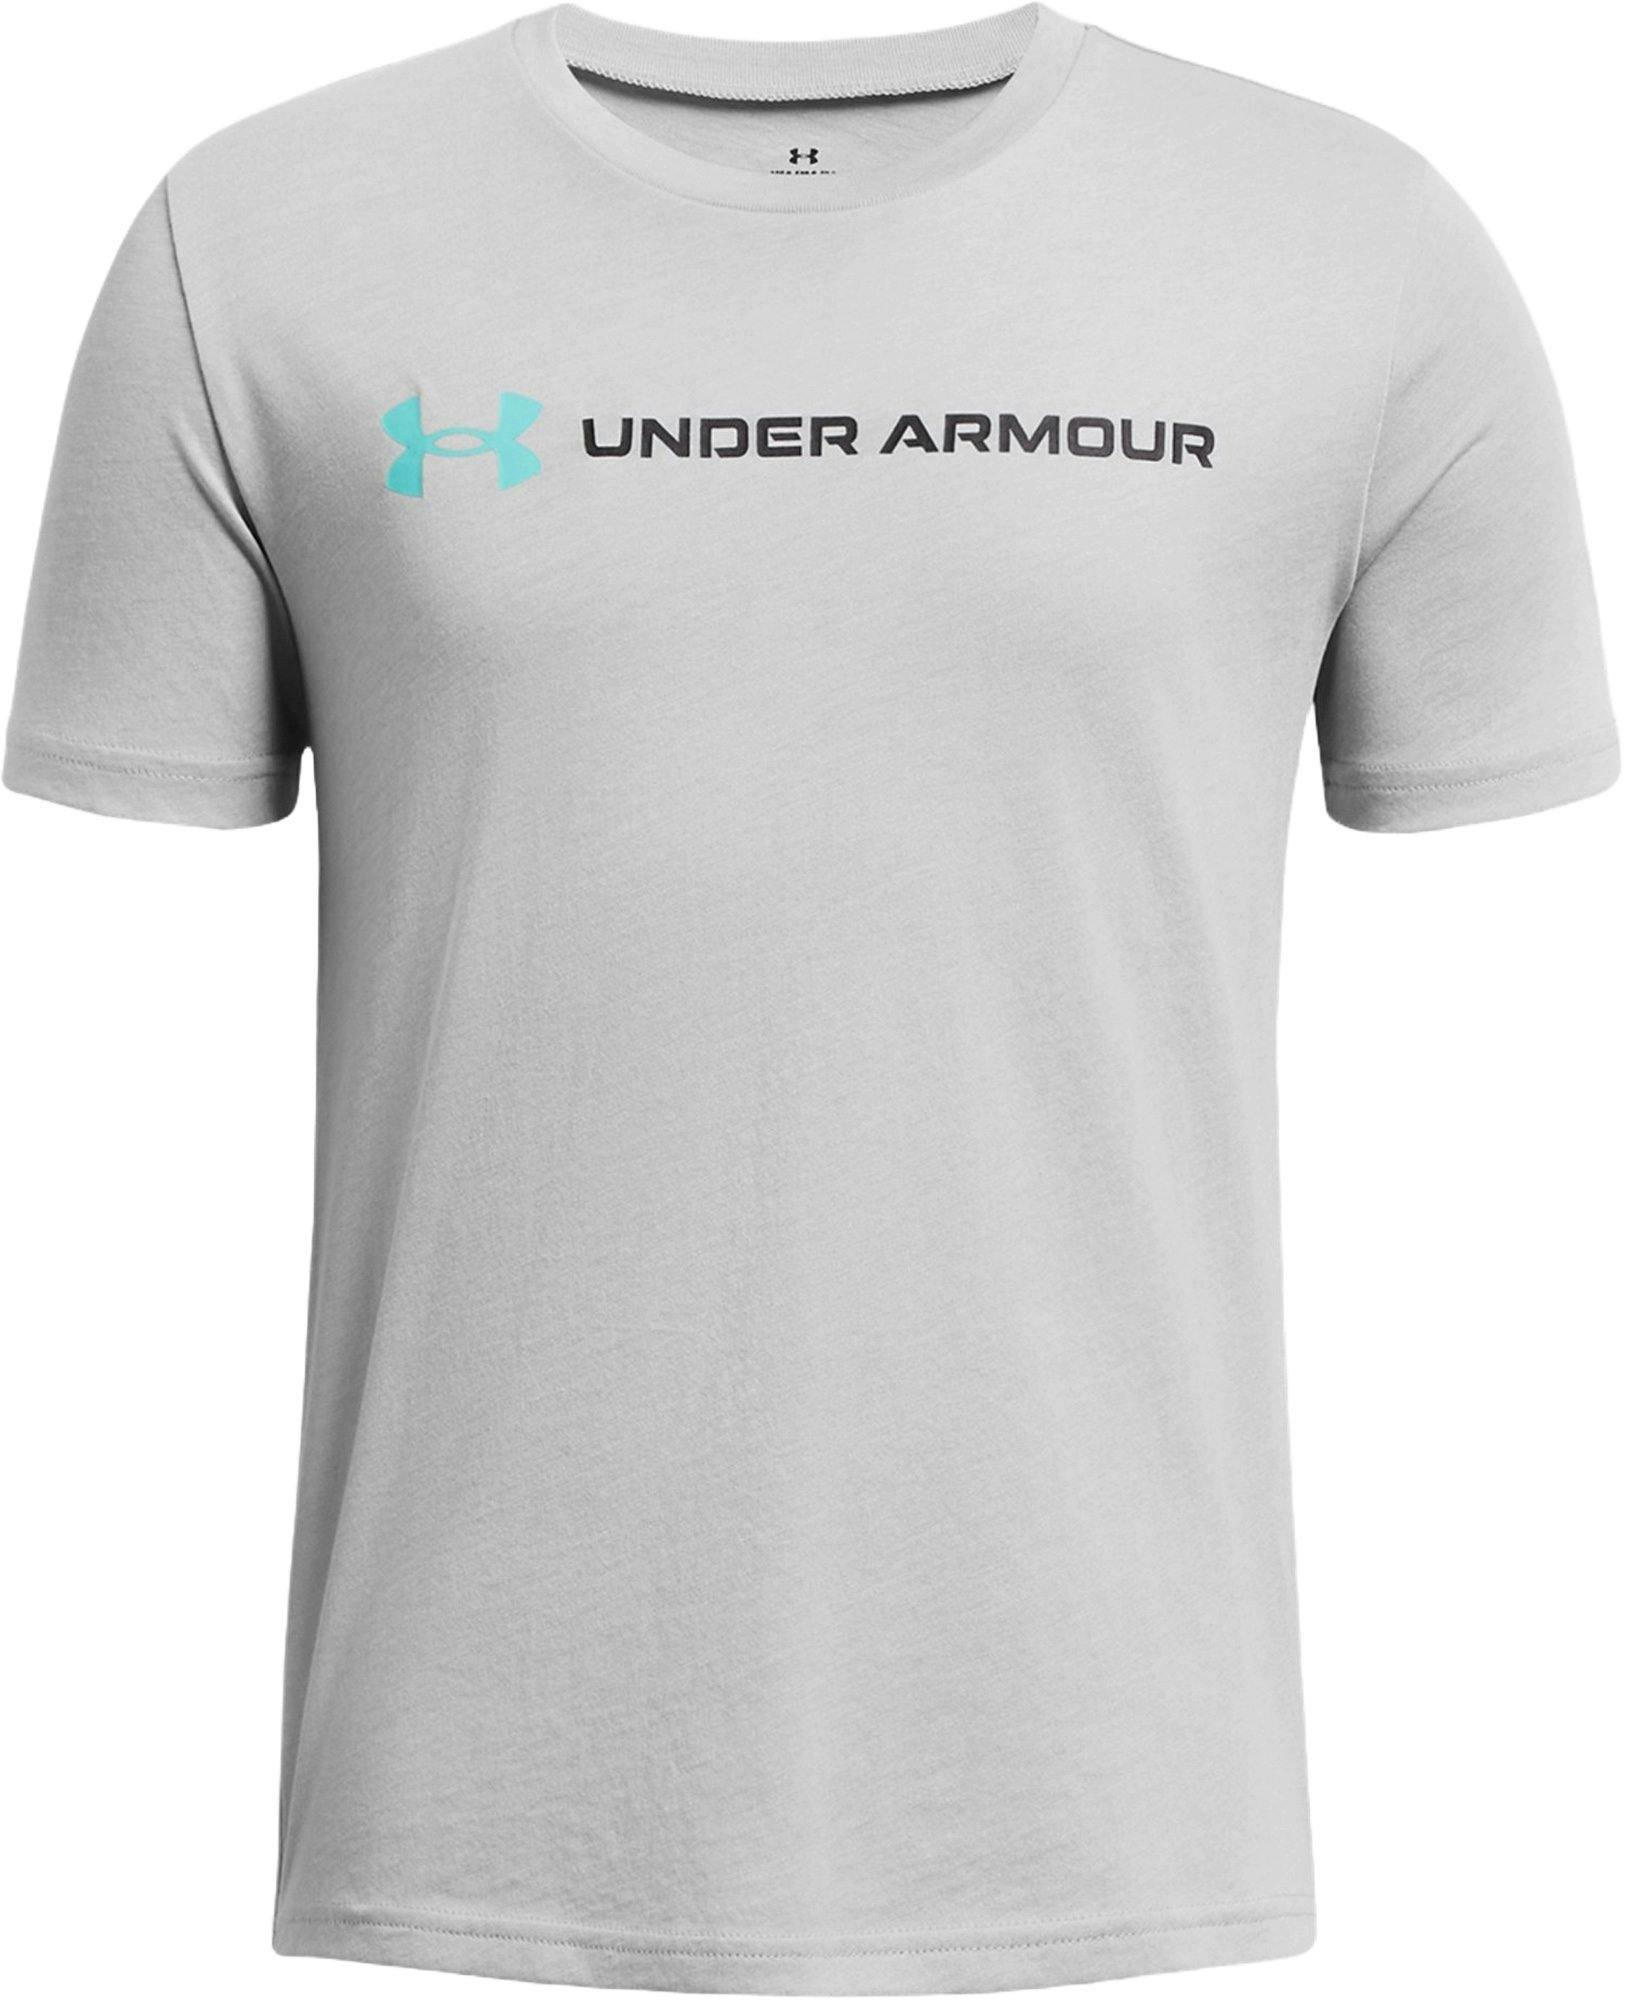 Product image for UA Logo Wordmark Short Sleeve T-shirt - Boys